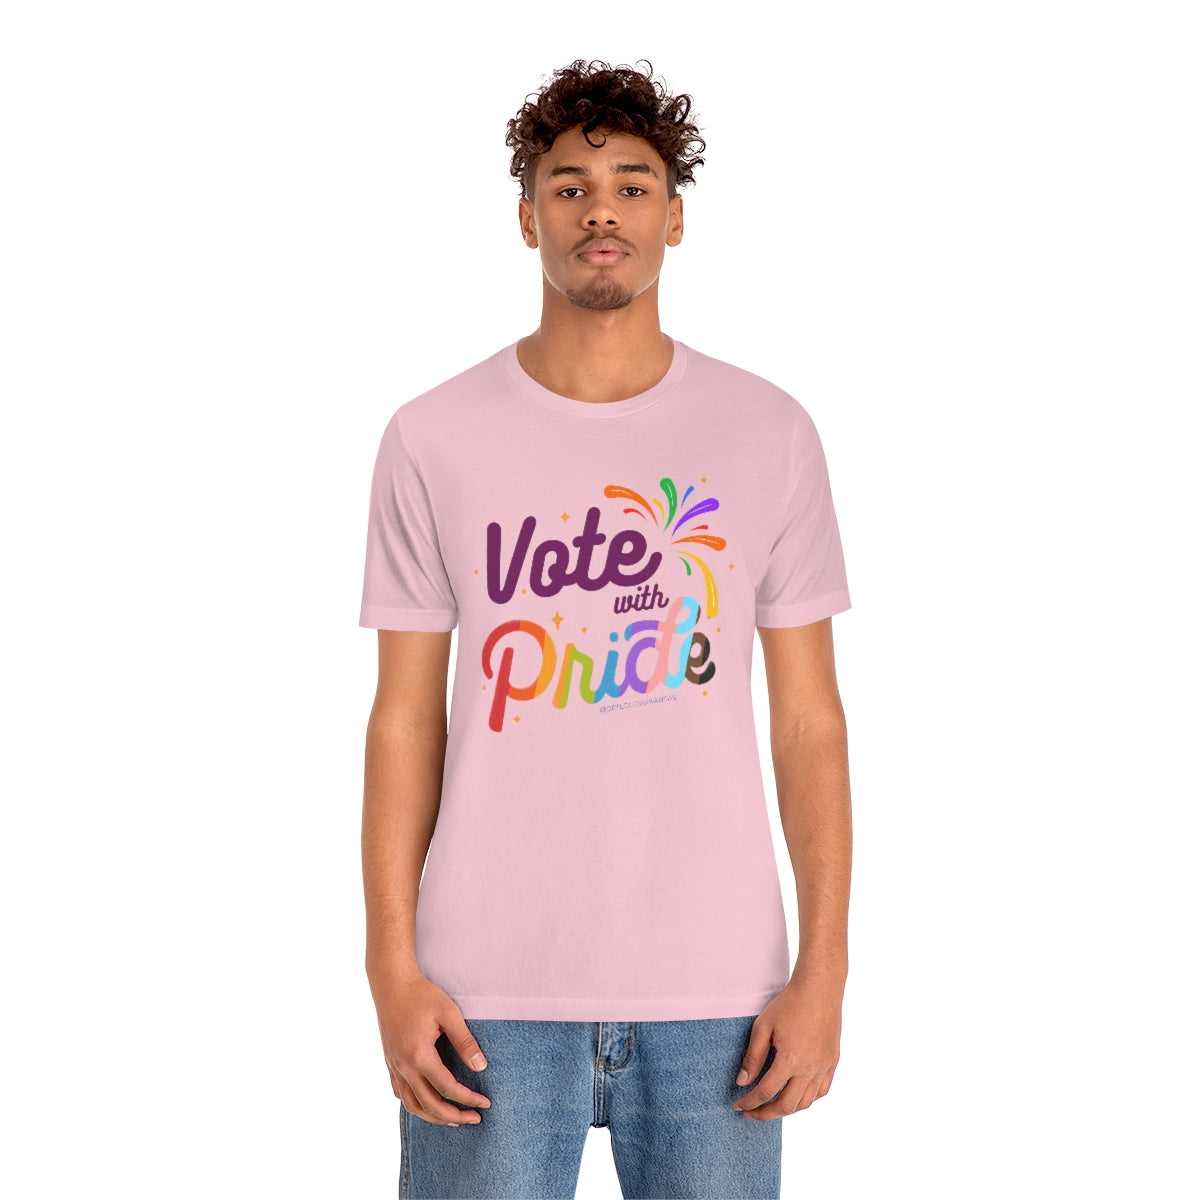 Vote with Pride Short Sleeve Tee